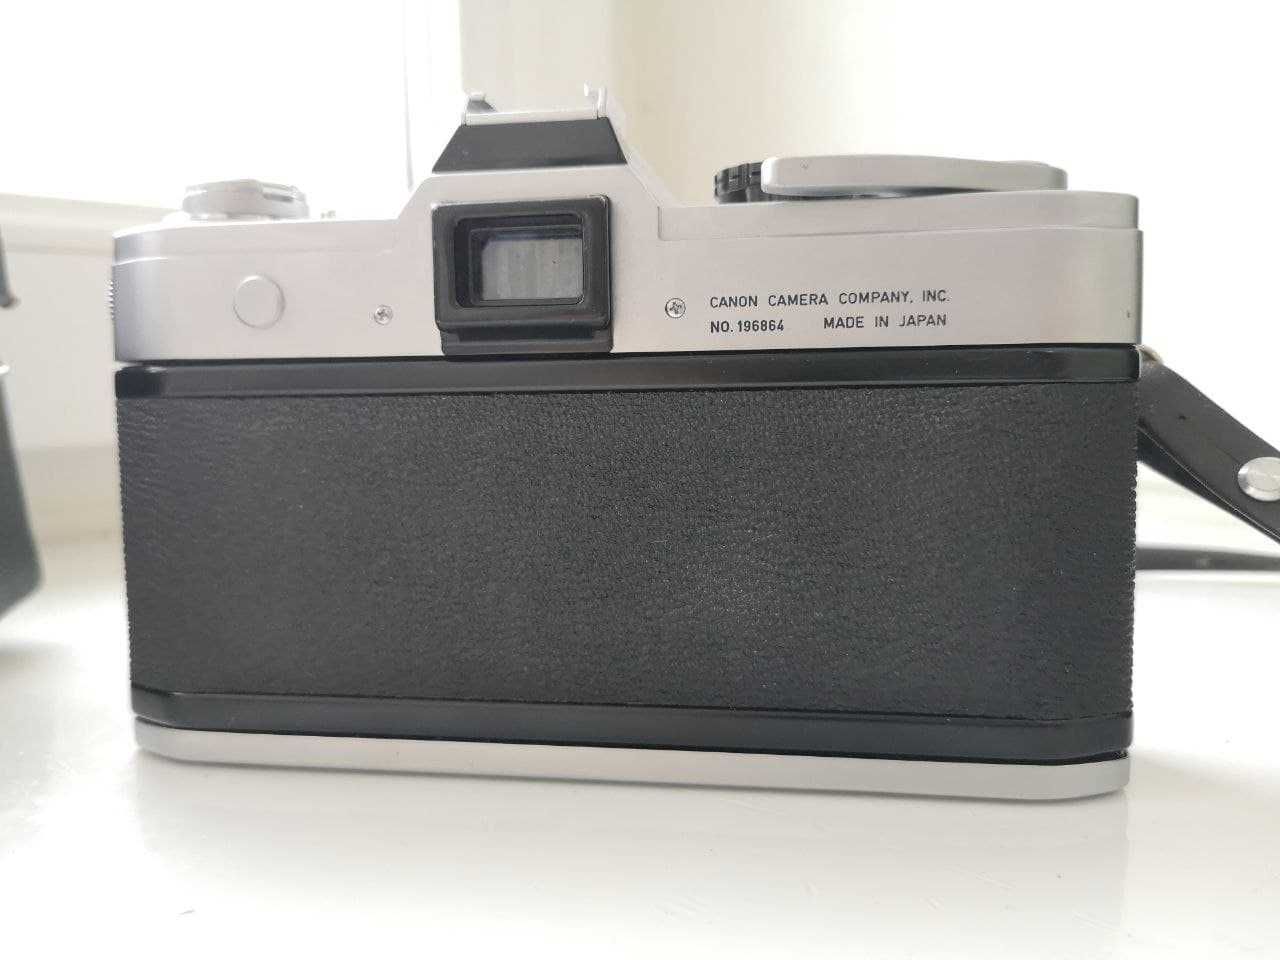 Пленочная фотокамера Canon FT QL + объектив Canon Lens FL 50mm f/ 1.8